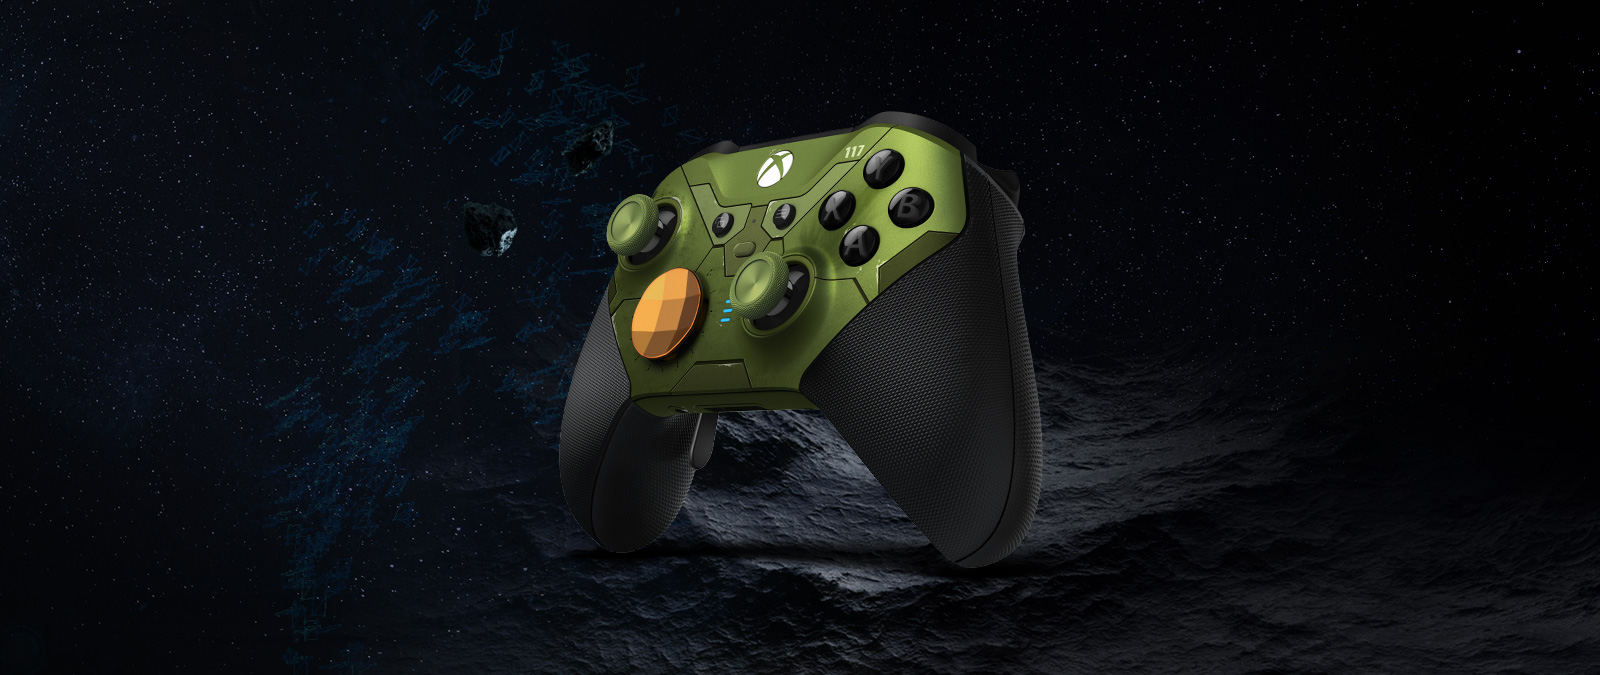 Rechte kijkhoek op de Xbox Elite draadloze controller Series 2 - Halo Infinite Limited Edition die in de ruimte zweeft